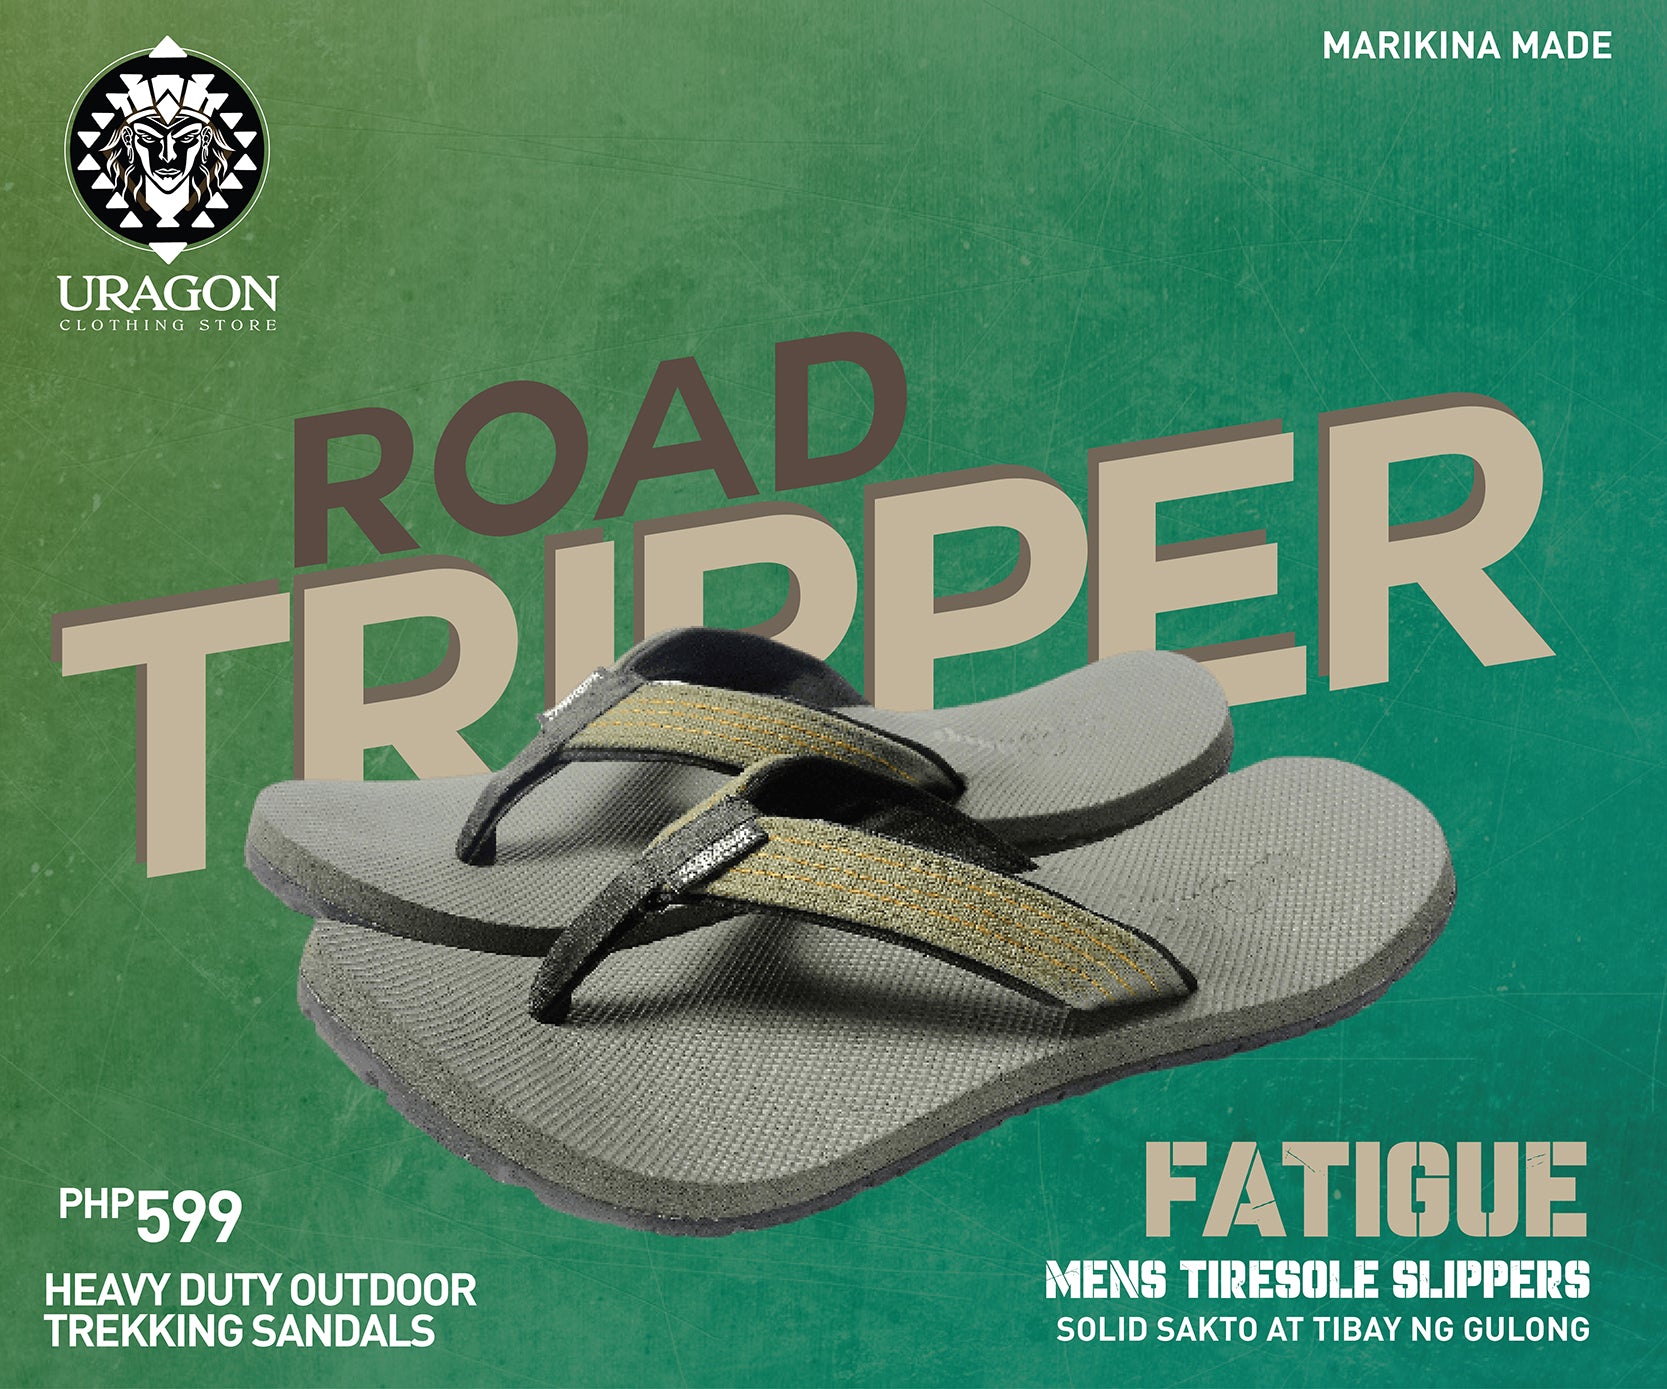 Uragon Road Tripper Tiresole Slipper Fatigue